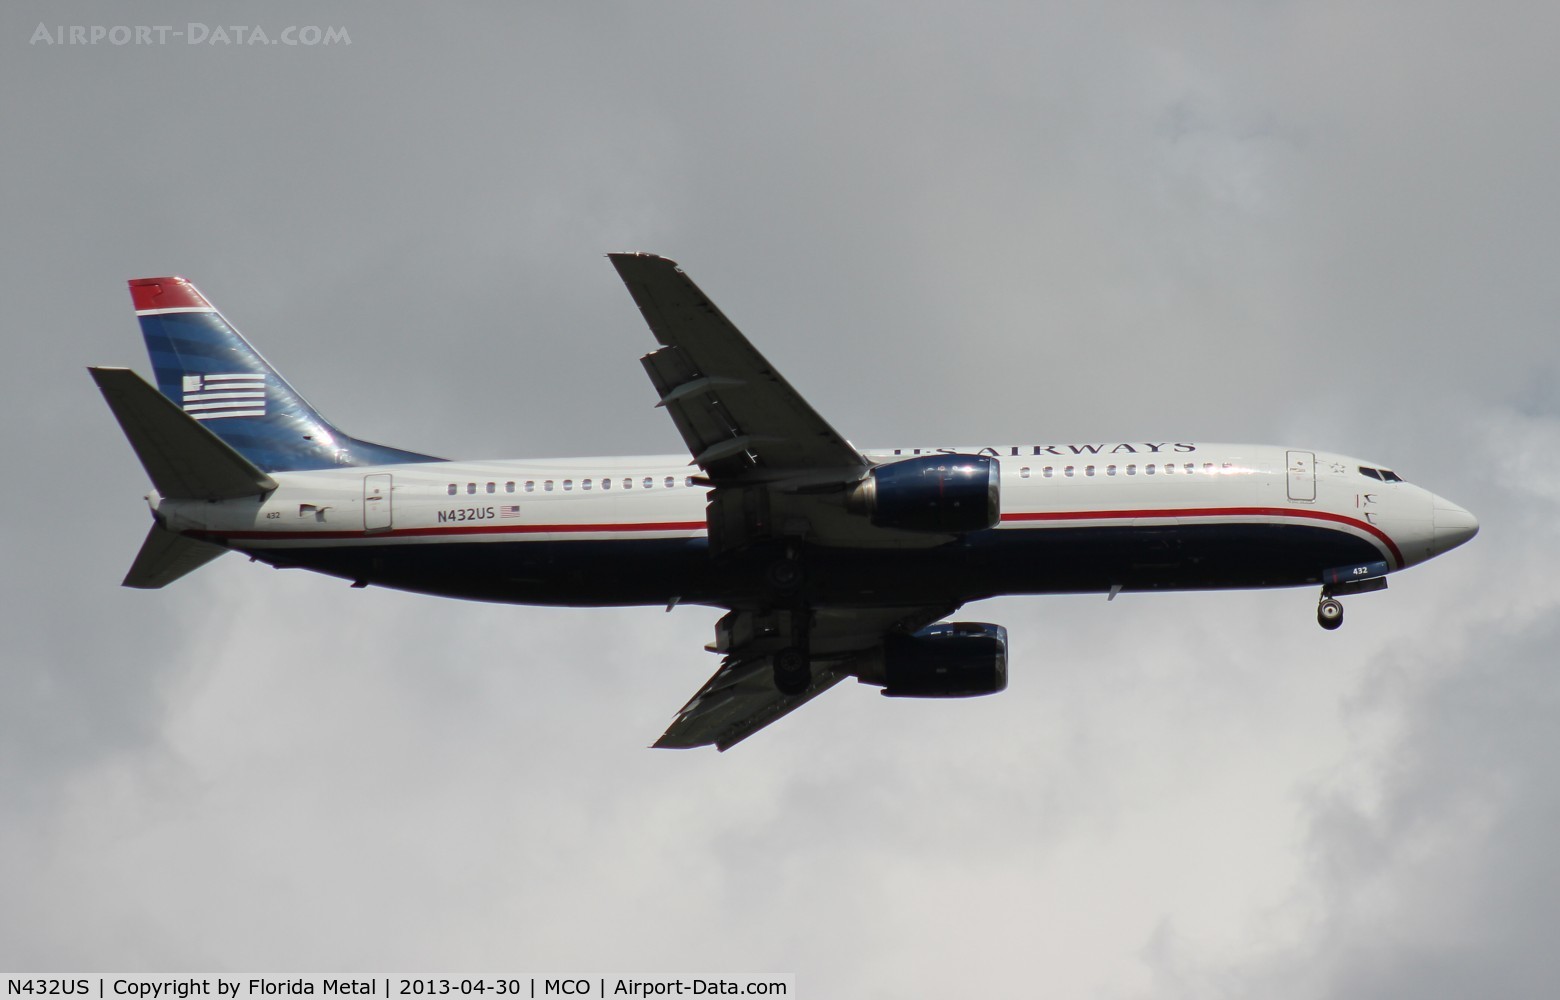 N432US, 1990 Boeing 737-4B7 C/N 24554, US Airways 737-400